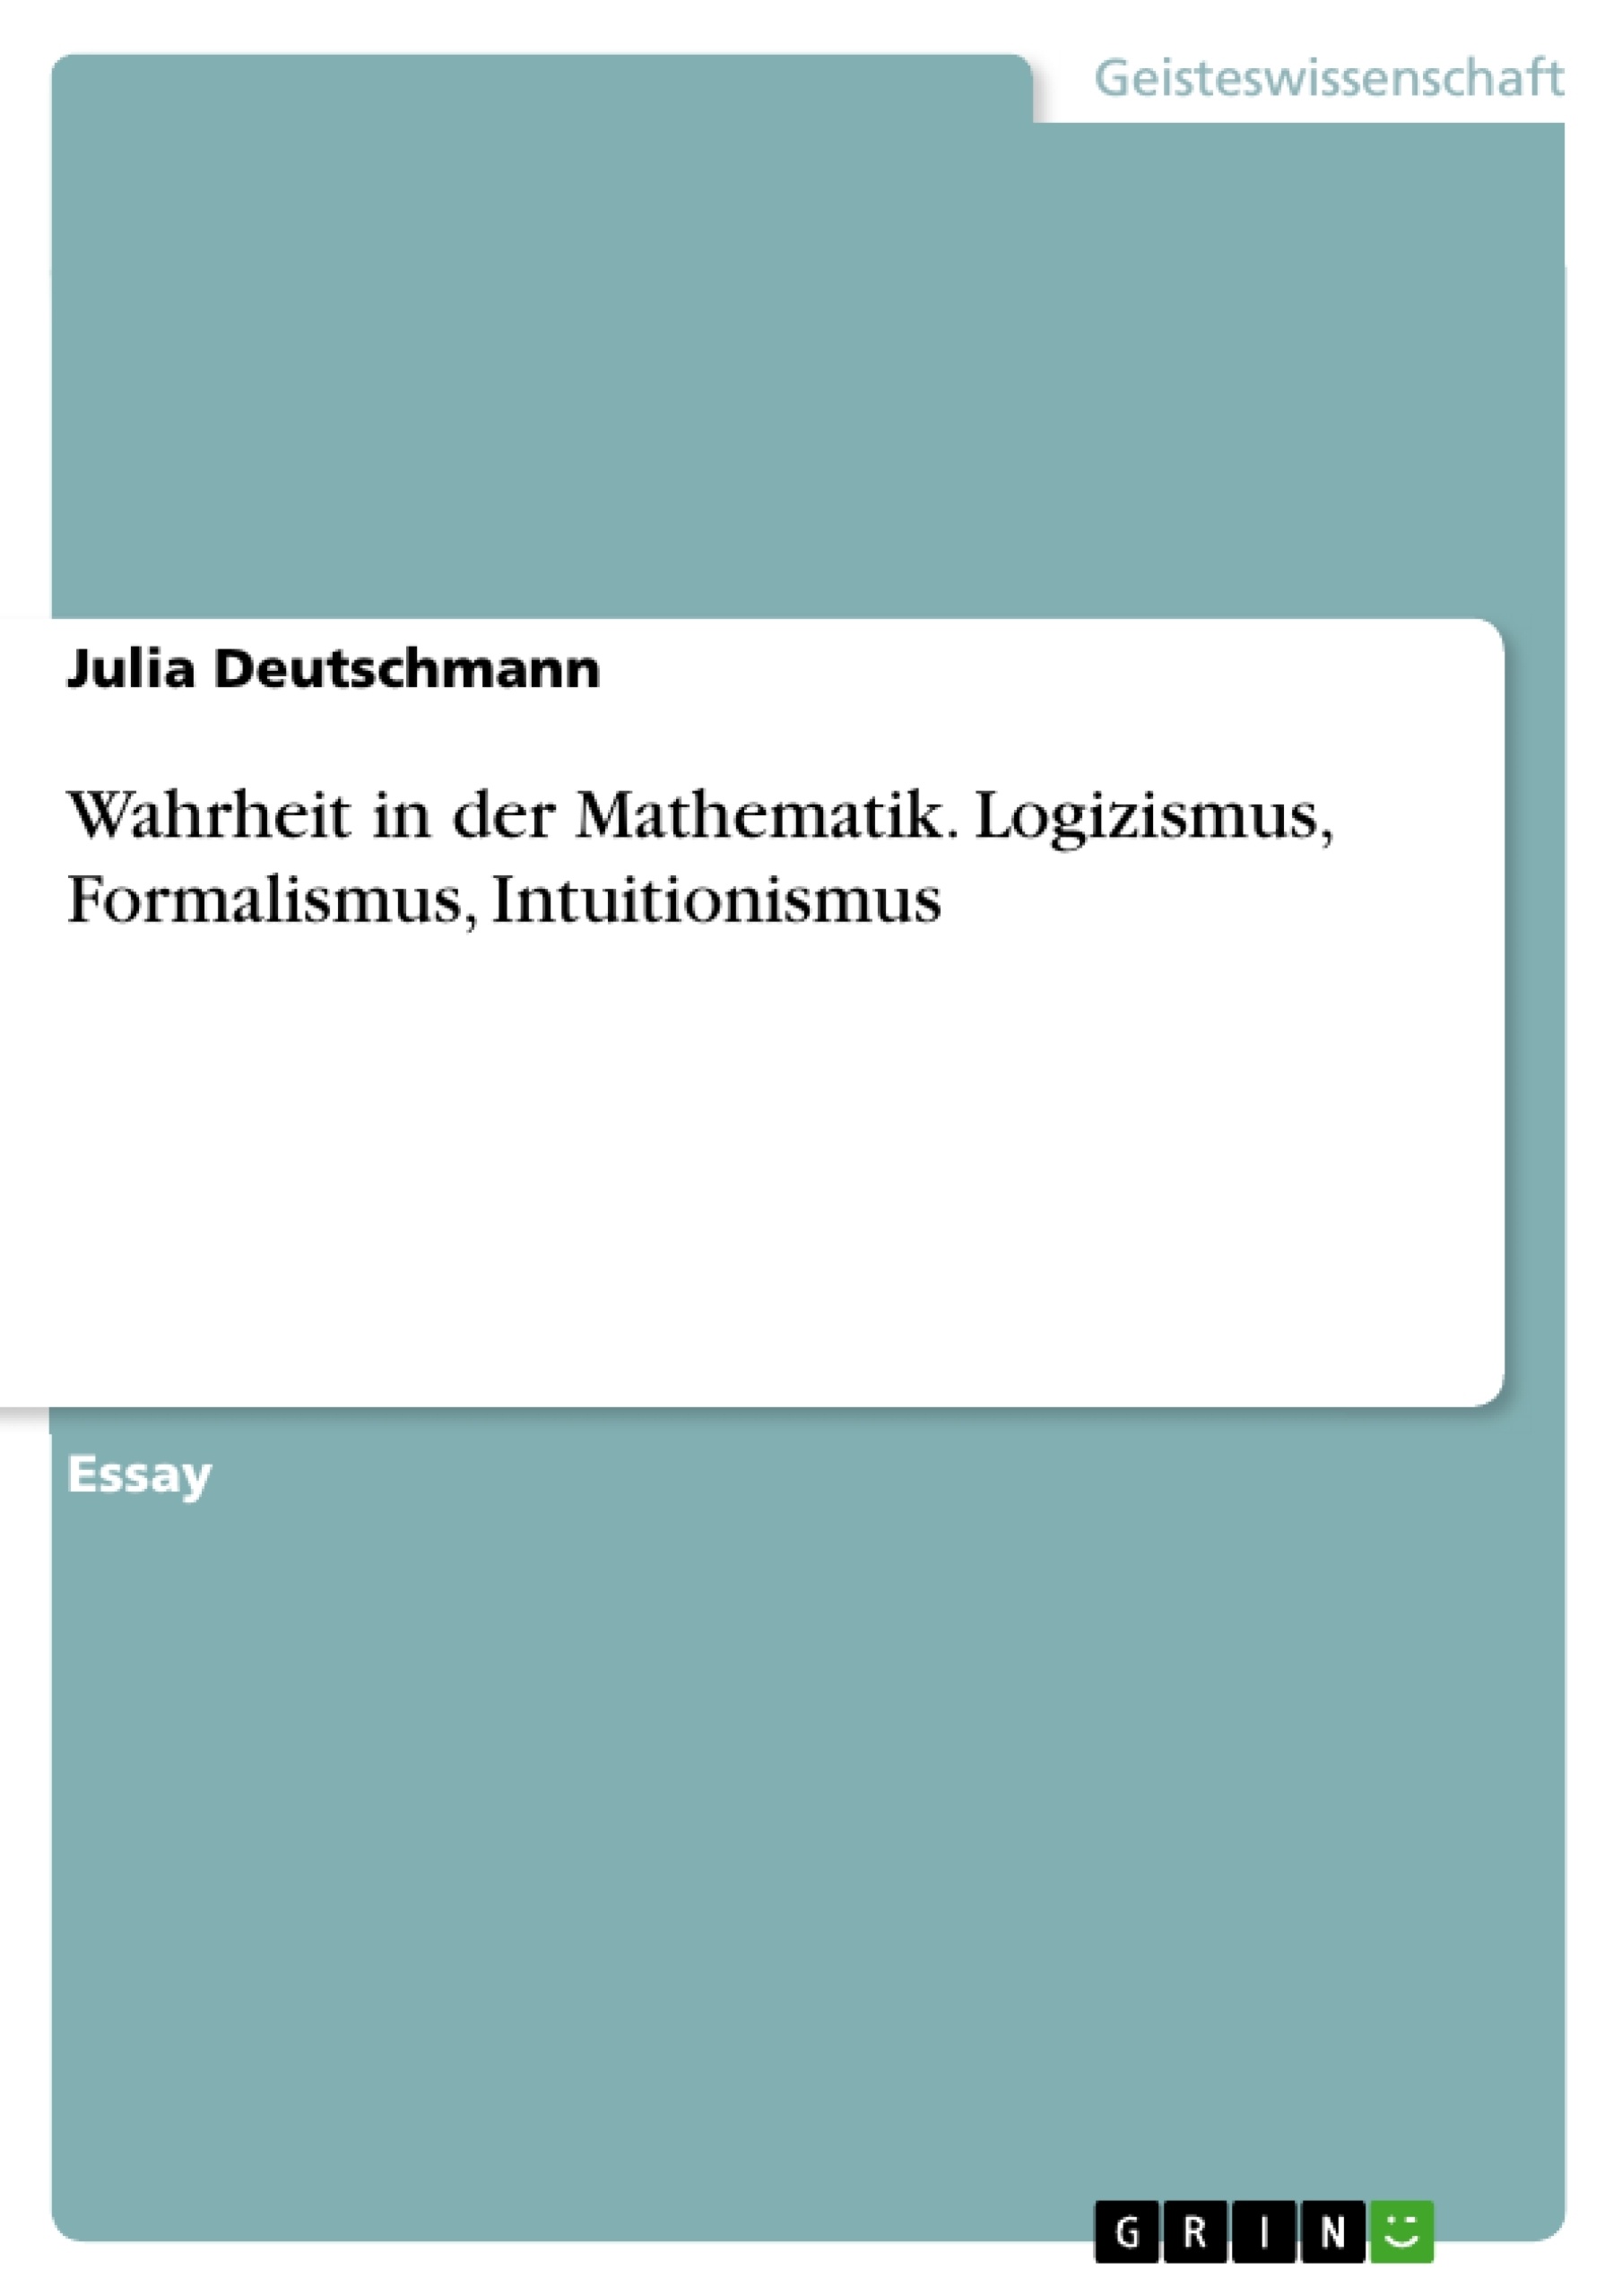 Título: Wahrheit in der Mathematik. Logizismus, Formalismus, Intuitionismus